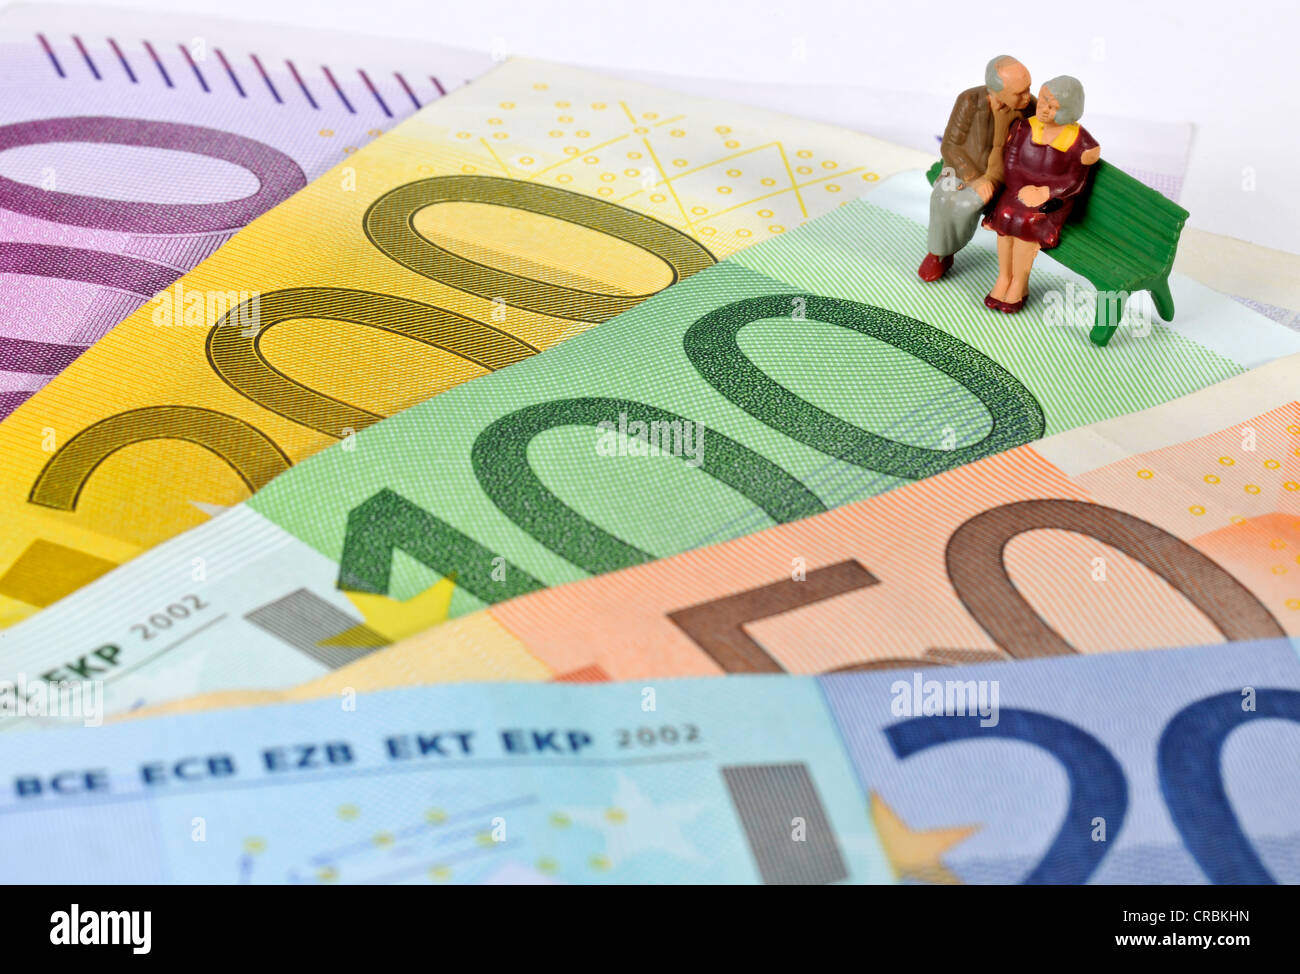 Figurines retraités, banc de parc sur euro note, image symbolique de la retraite, de la retraite Banque D'Images